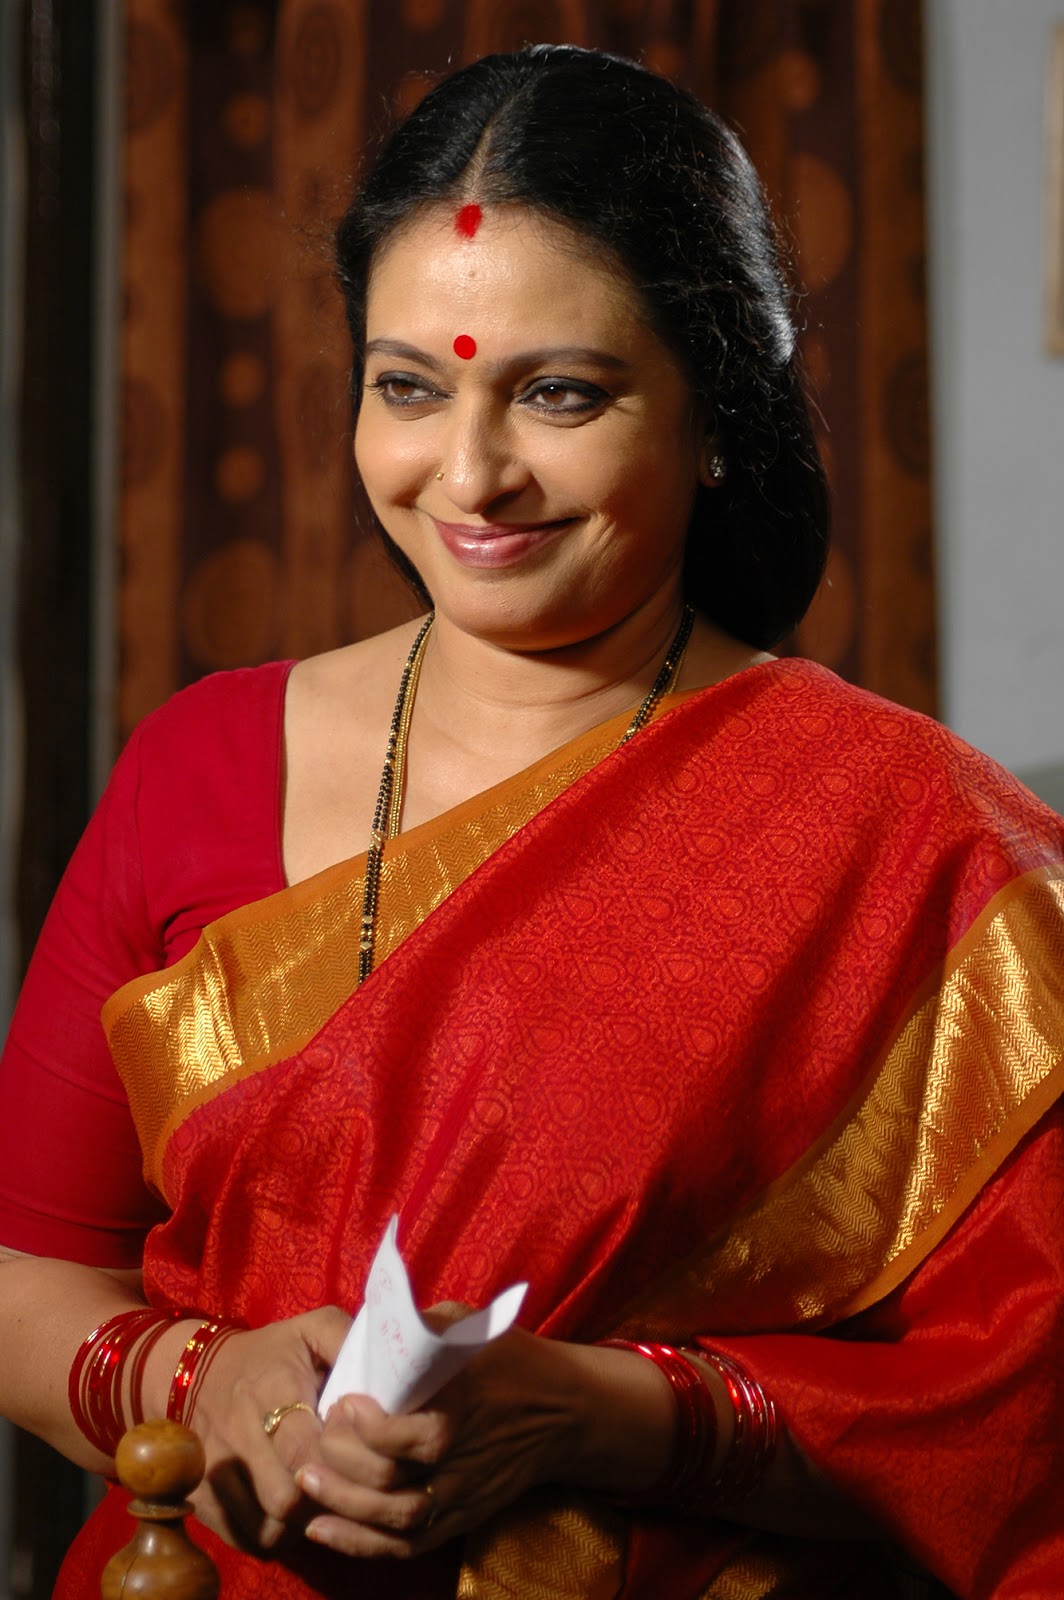 fonds d'écran amma,sari,un événement,tradition,la cérémonie,sourire